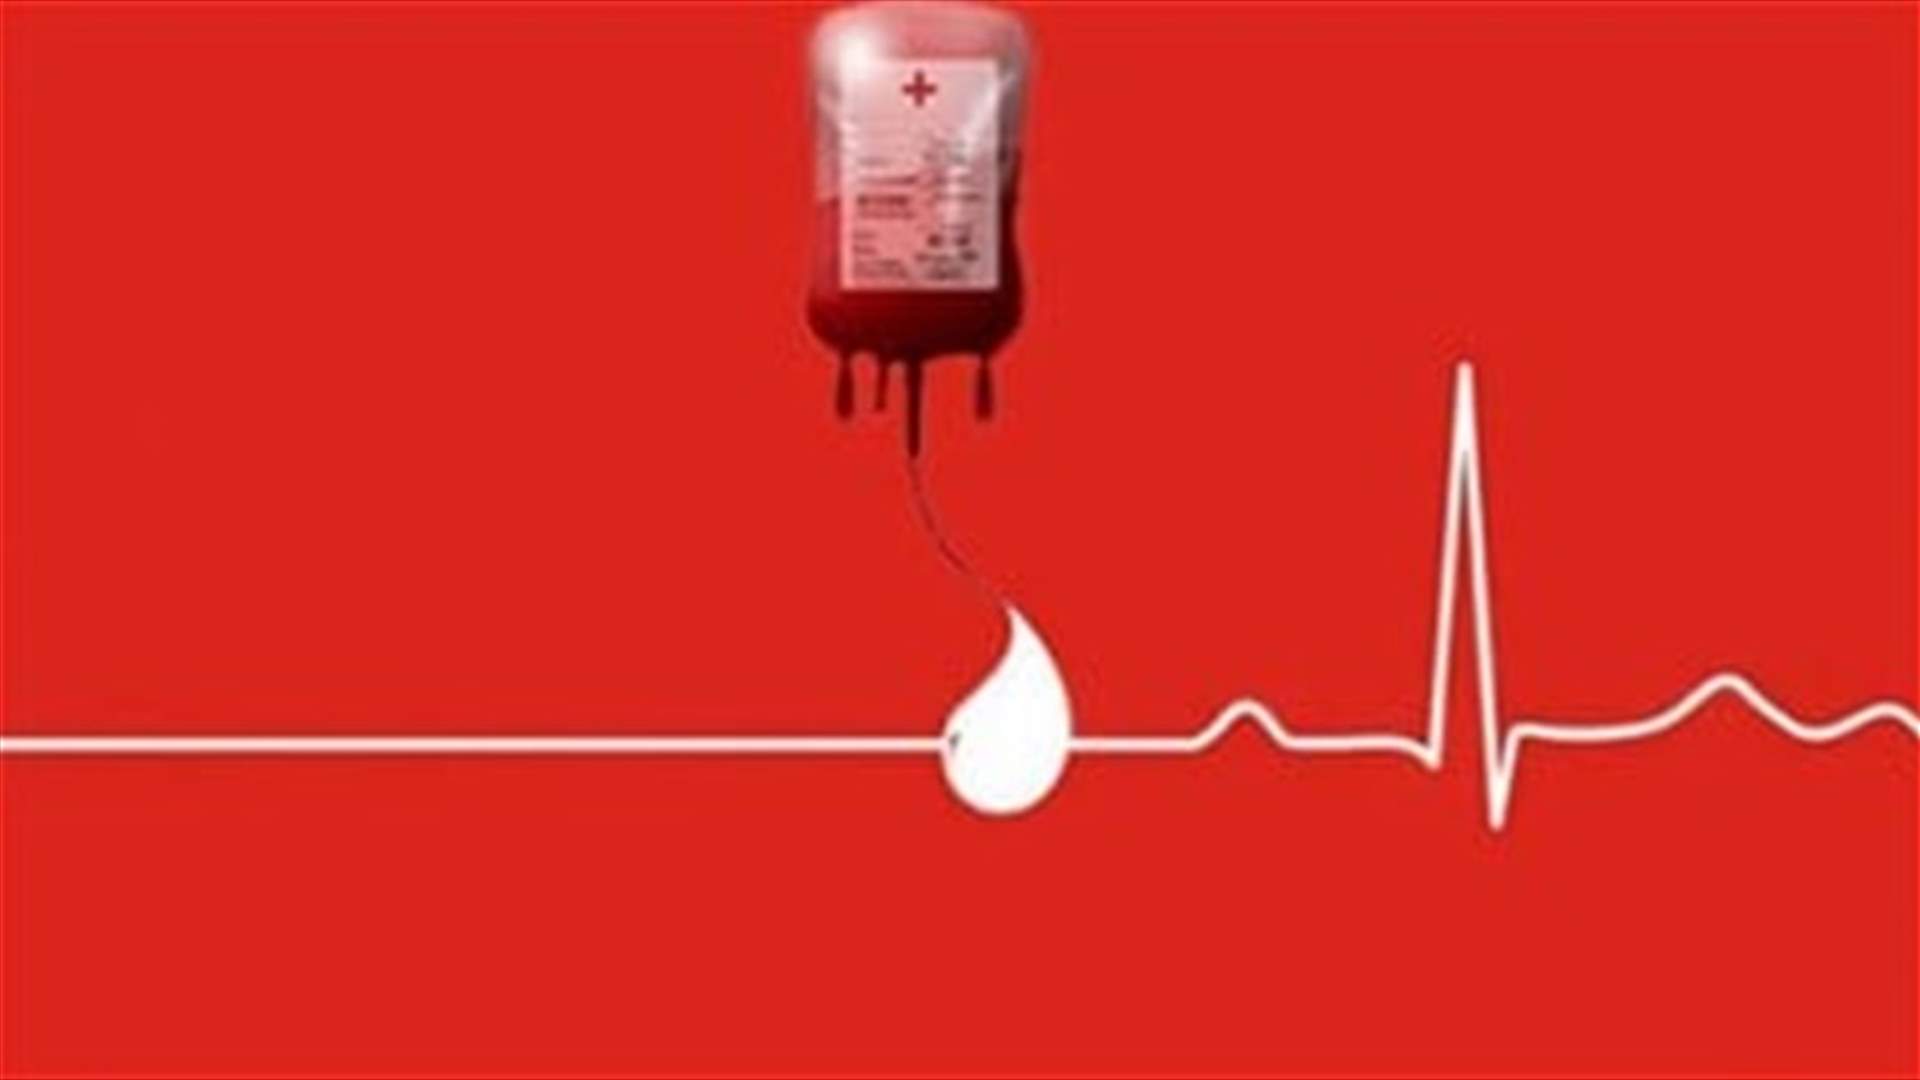 مريض في مستشفى لبيب صيدا بحاجة ماسة إلى وحدة دم من فئة B+  ... للمساعدة الرجاء الاتصال على الرقم التالي: 70/688242